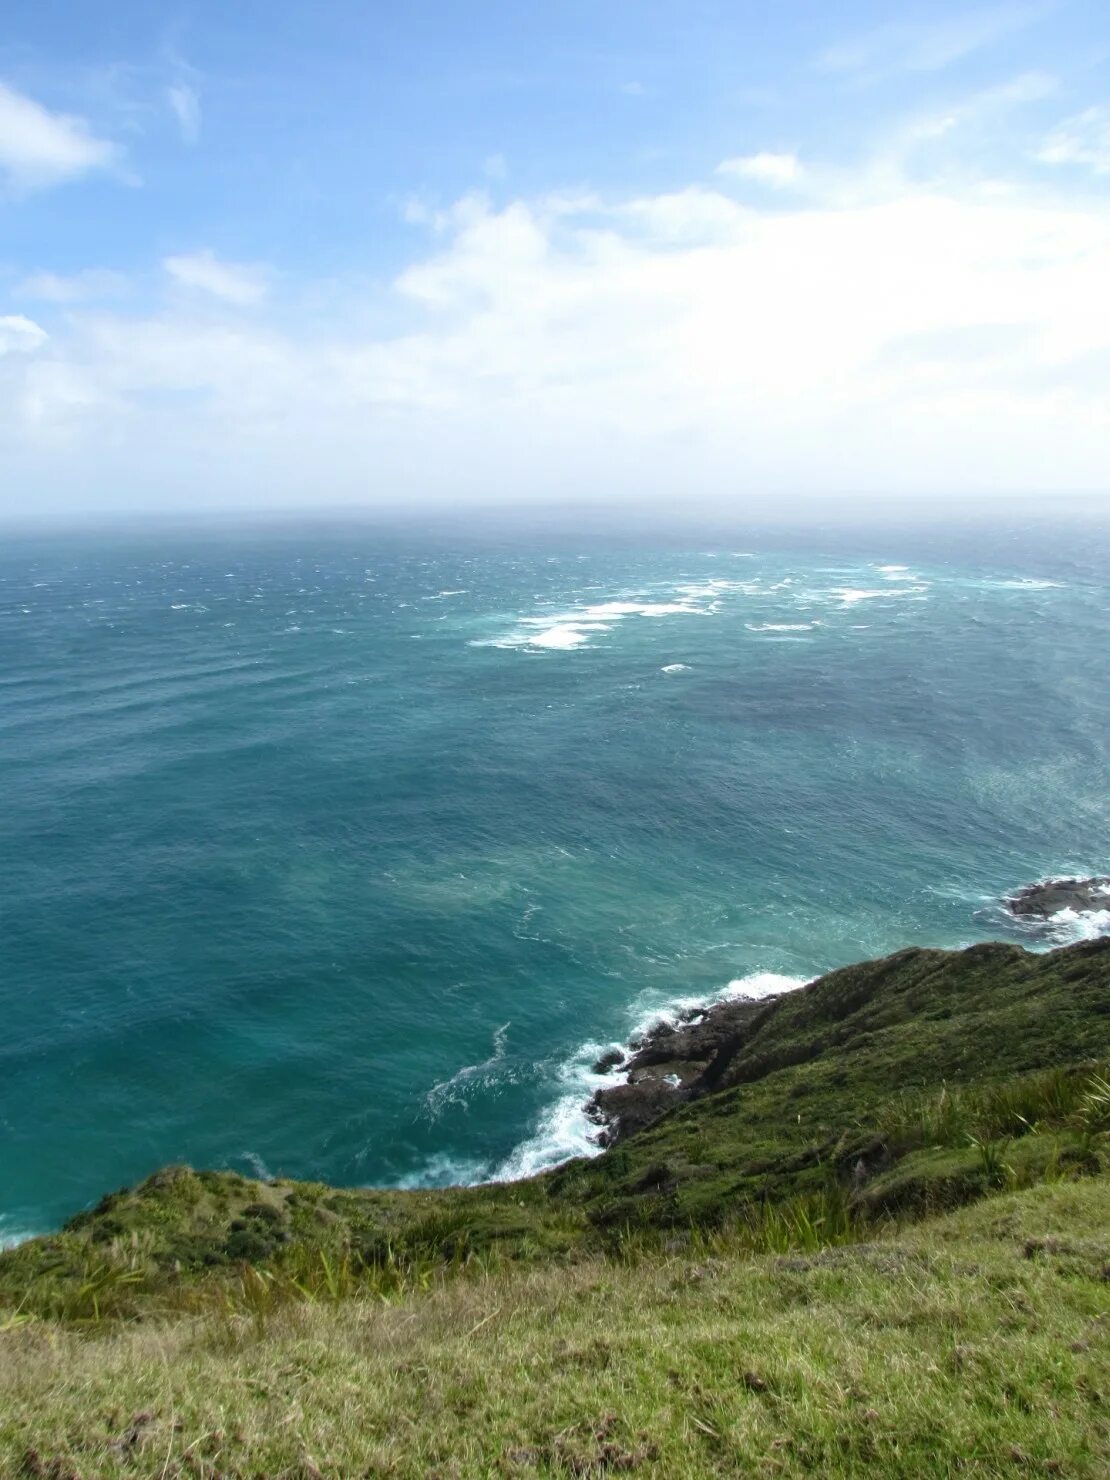 Тасманово море и тихий океан. Новая Зеландия тасманово море. Новая Зеландия море океан.